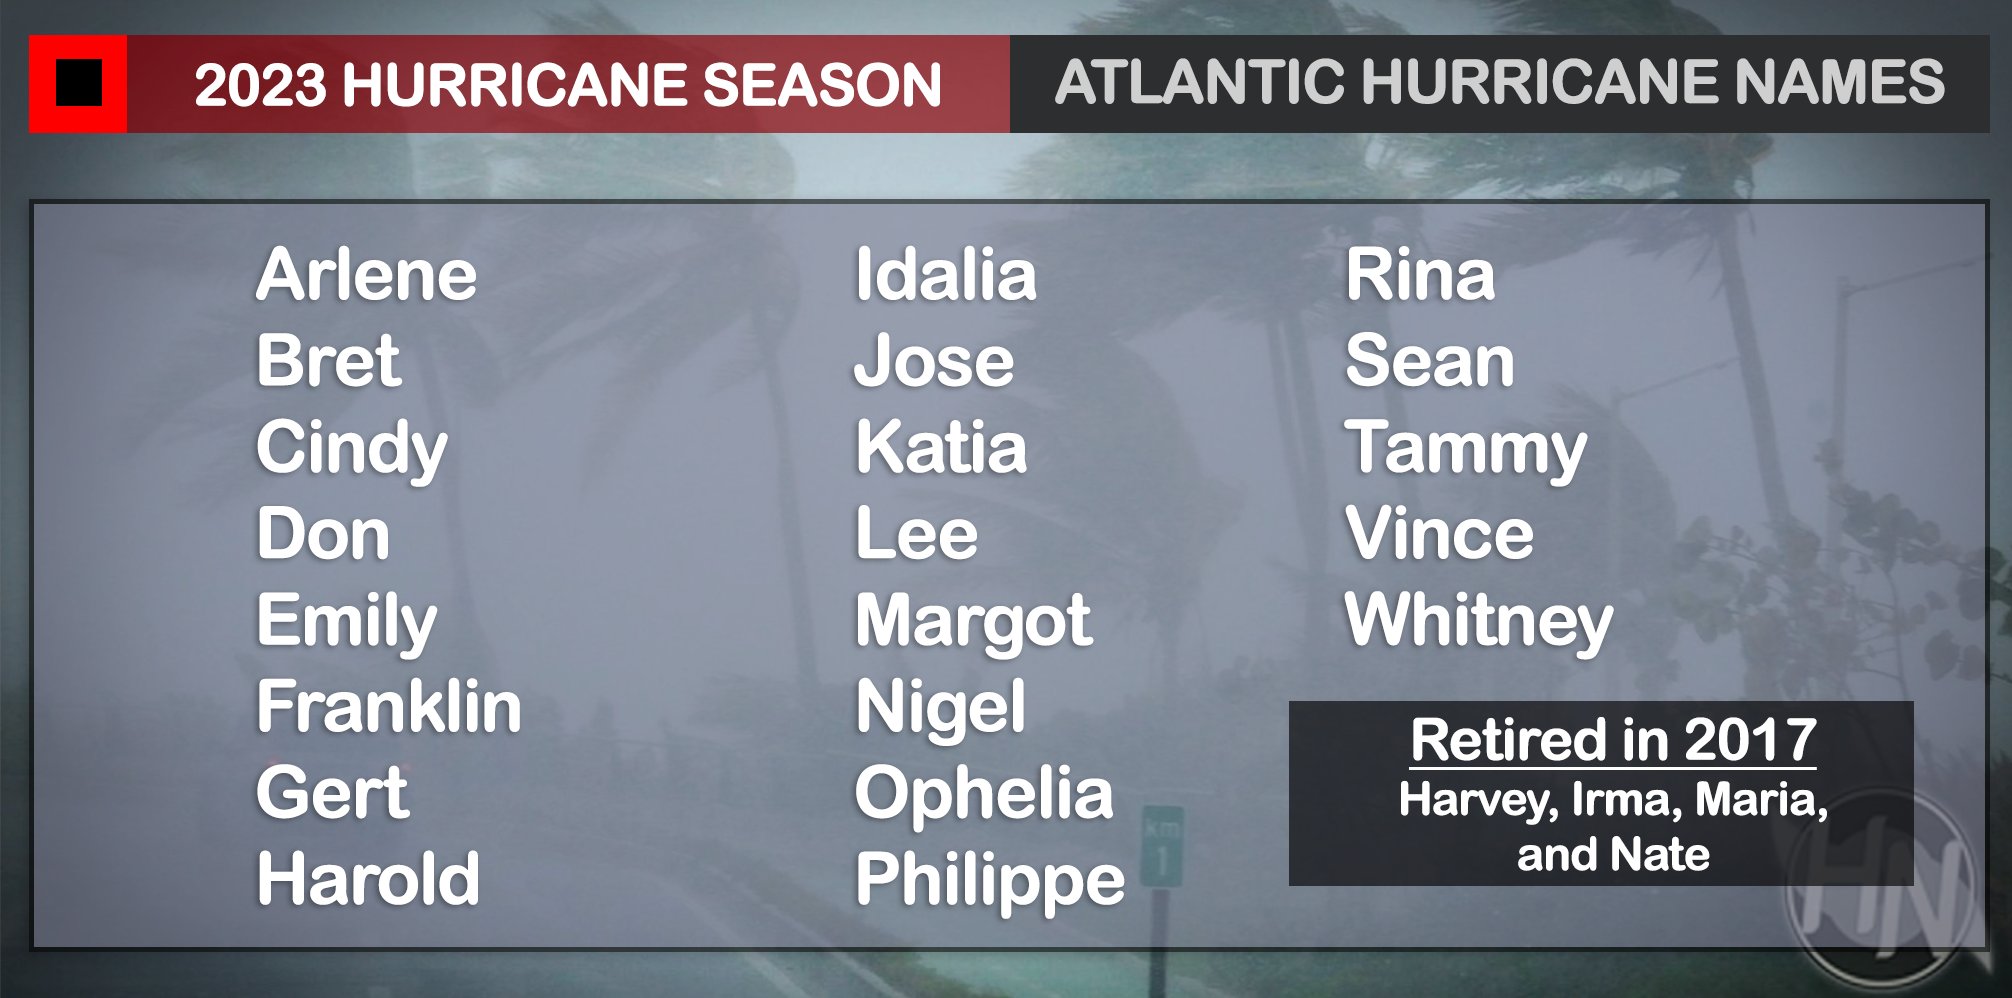 2023 Atlantic Hurricane Season Names